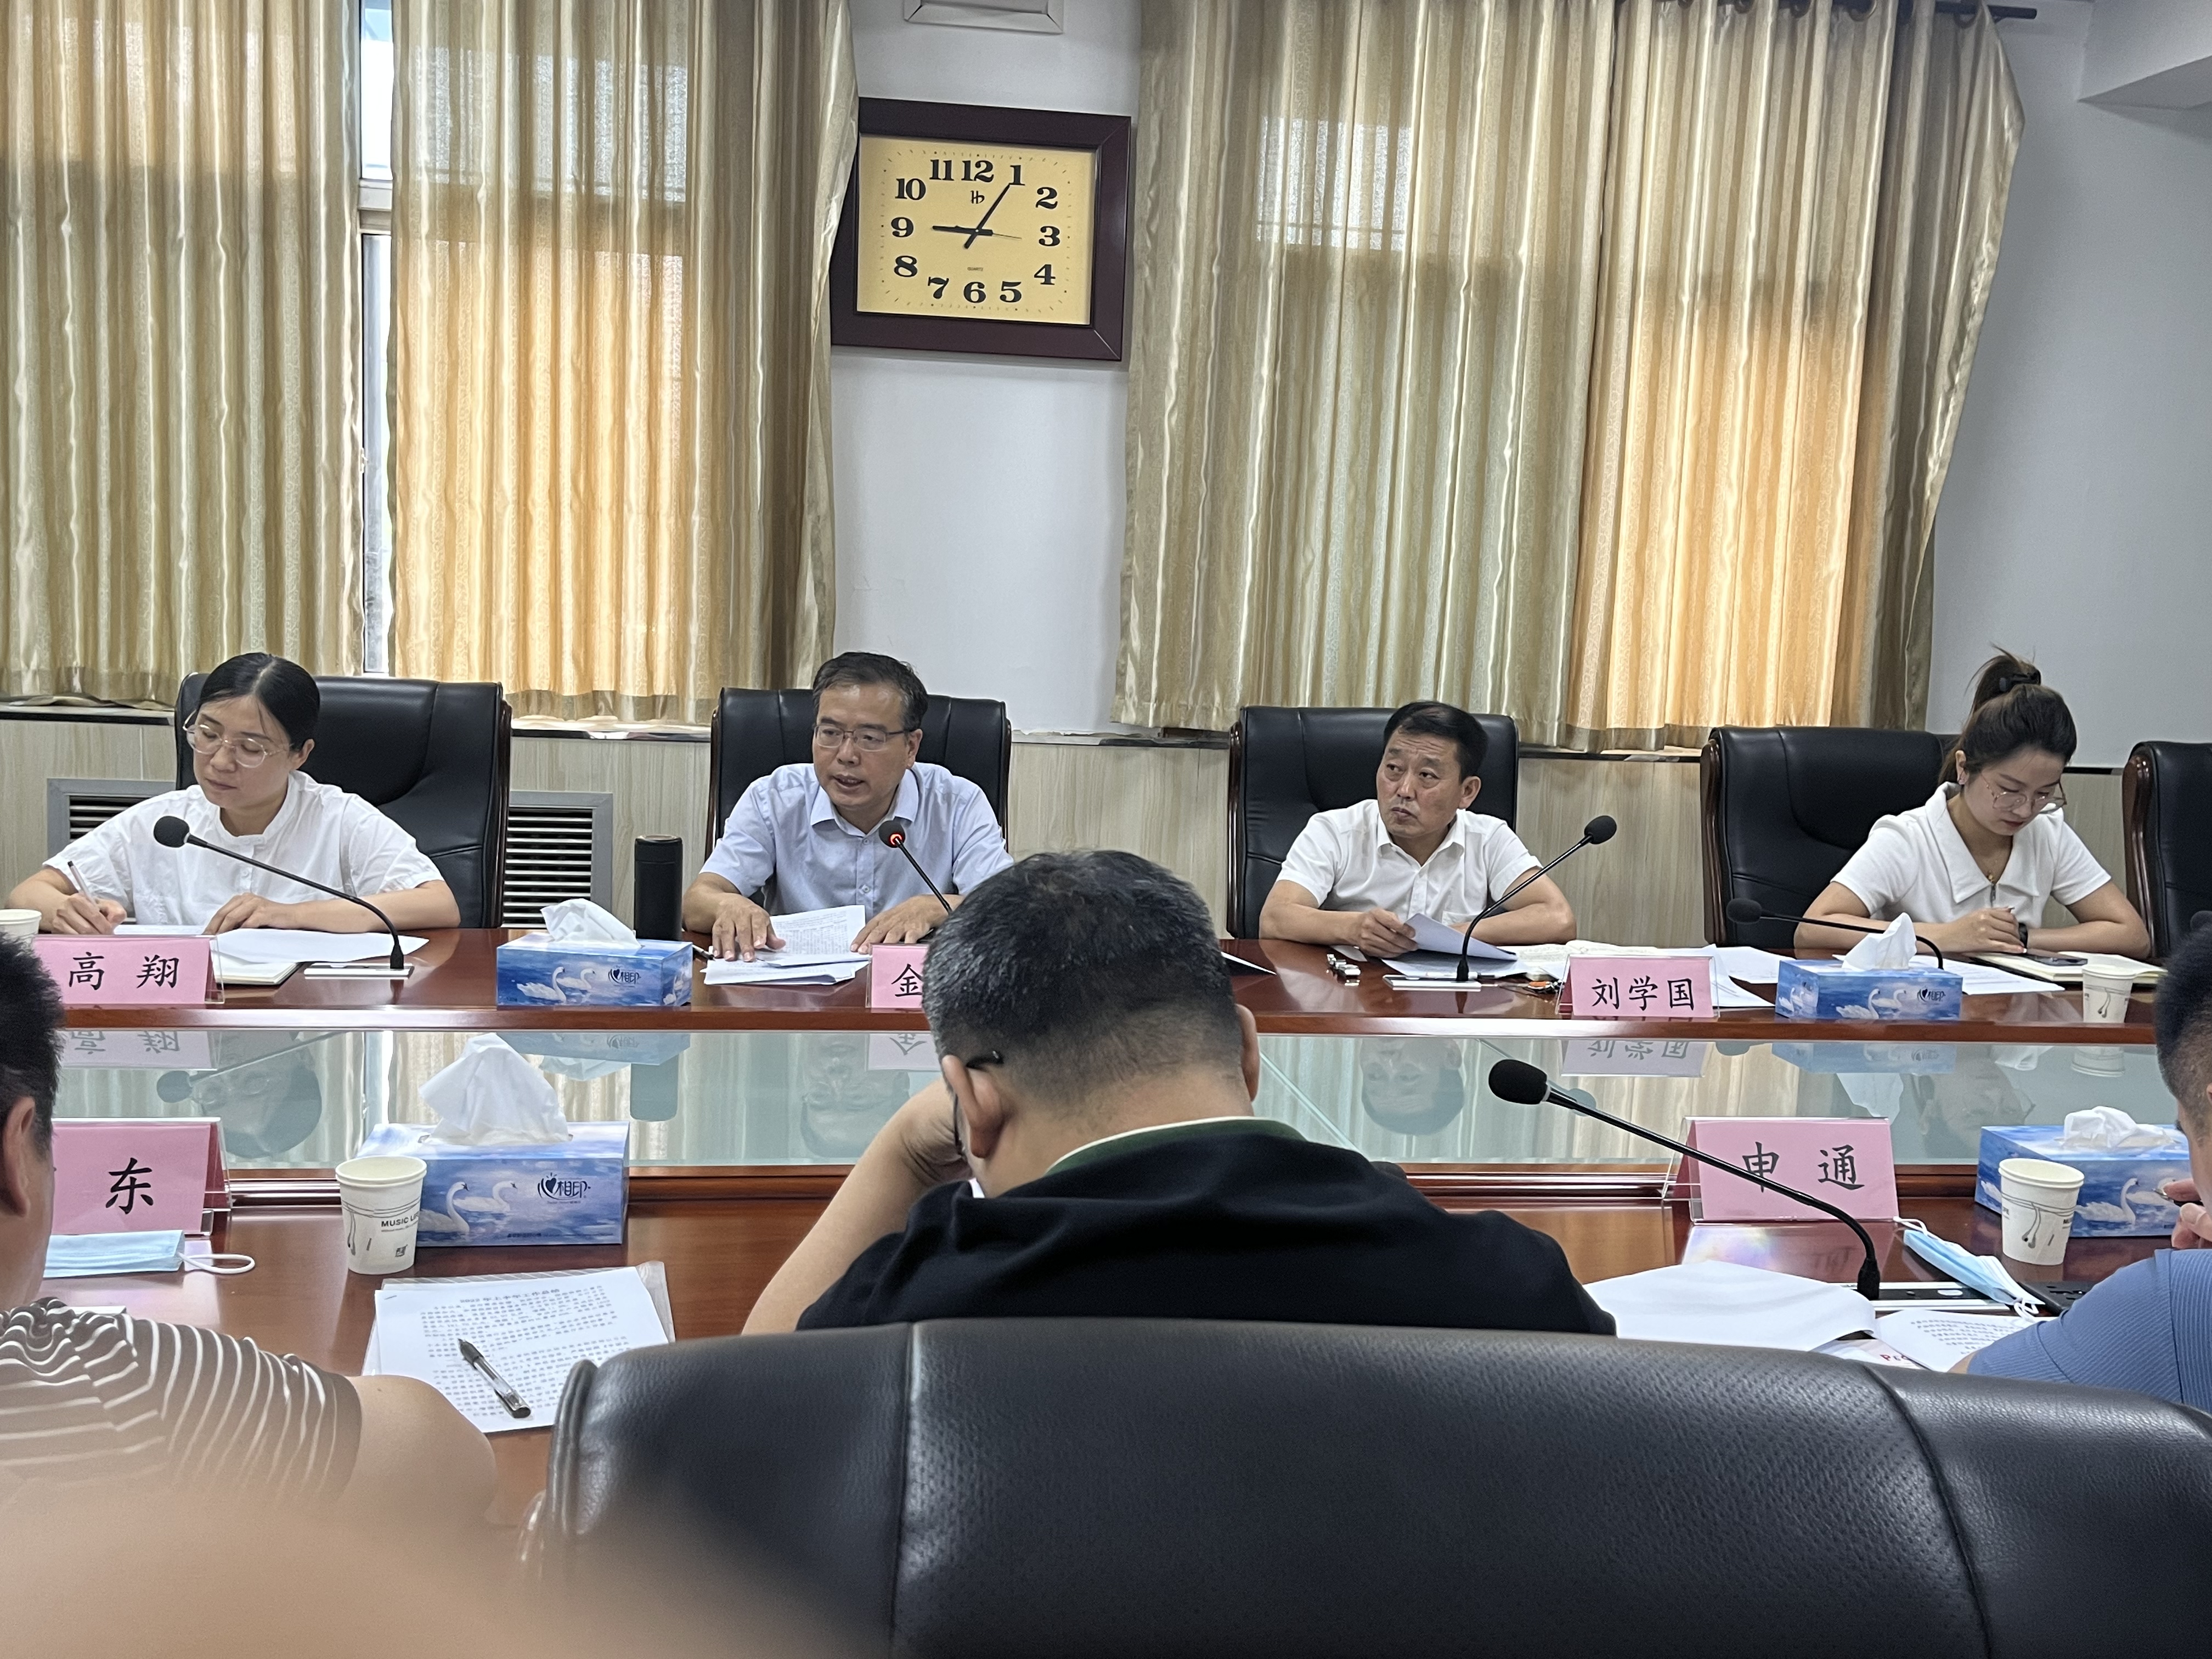 河北省快递行业协会 召开第三届常务理事会第四次会议